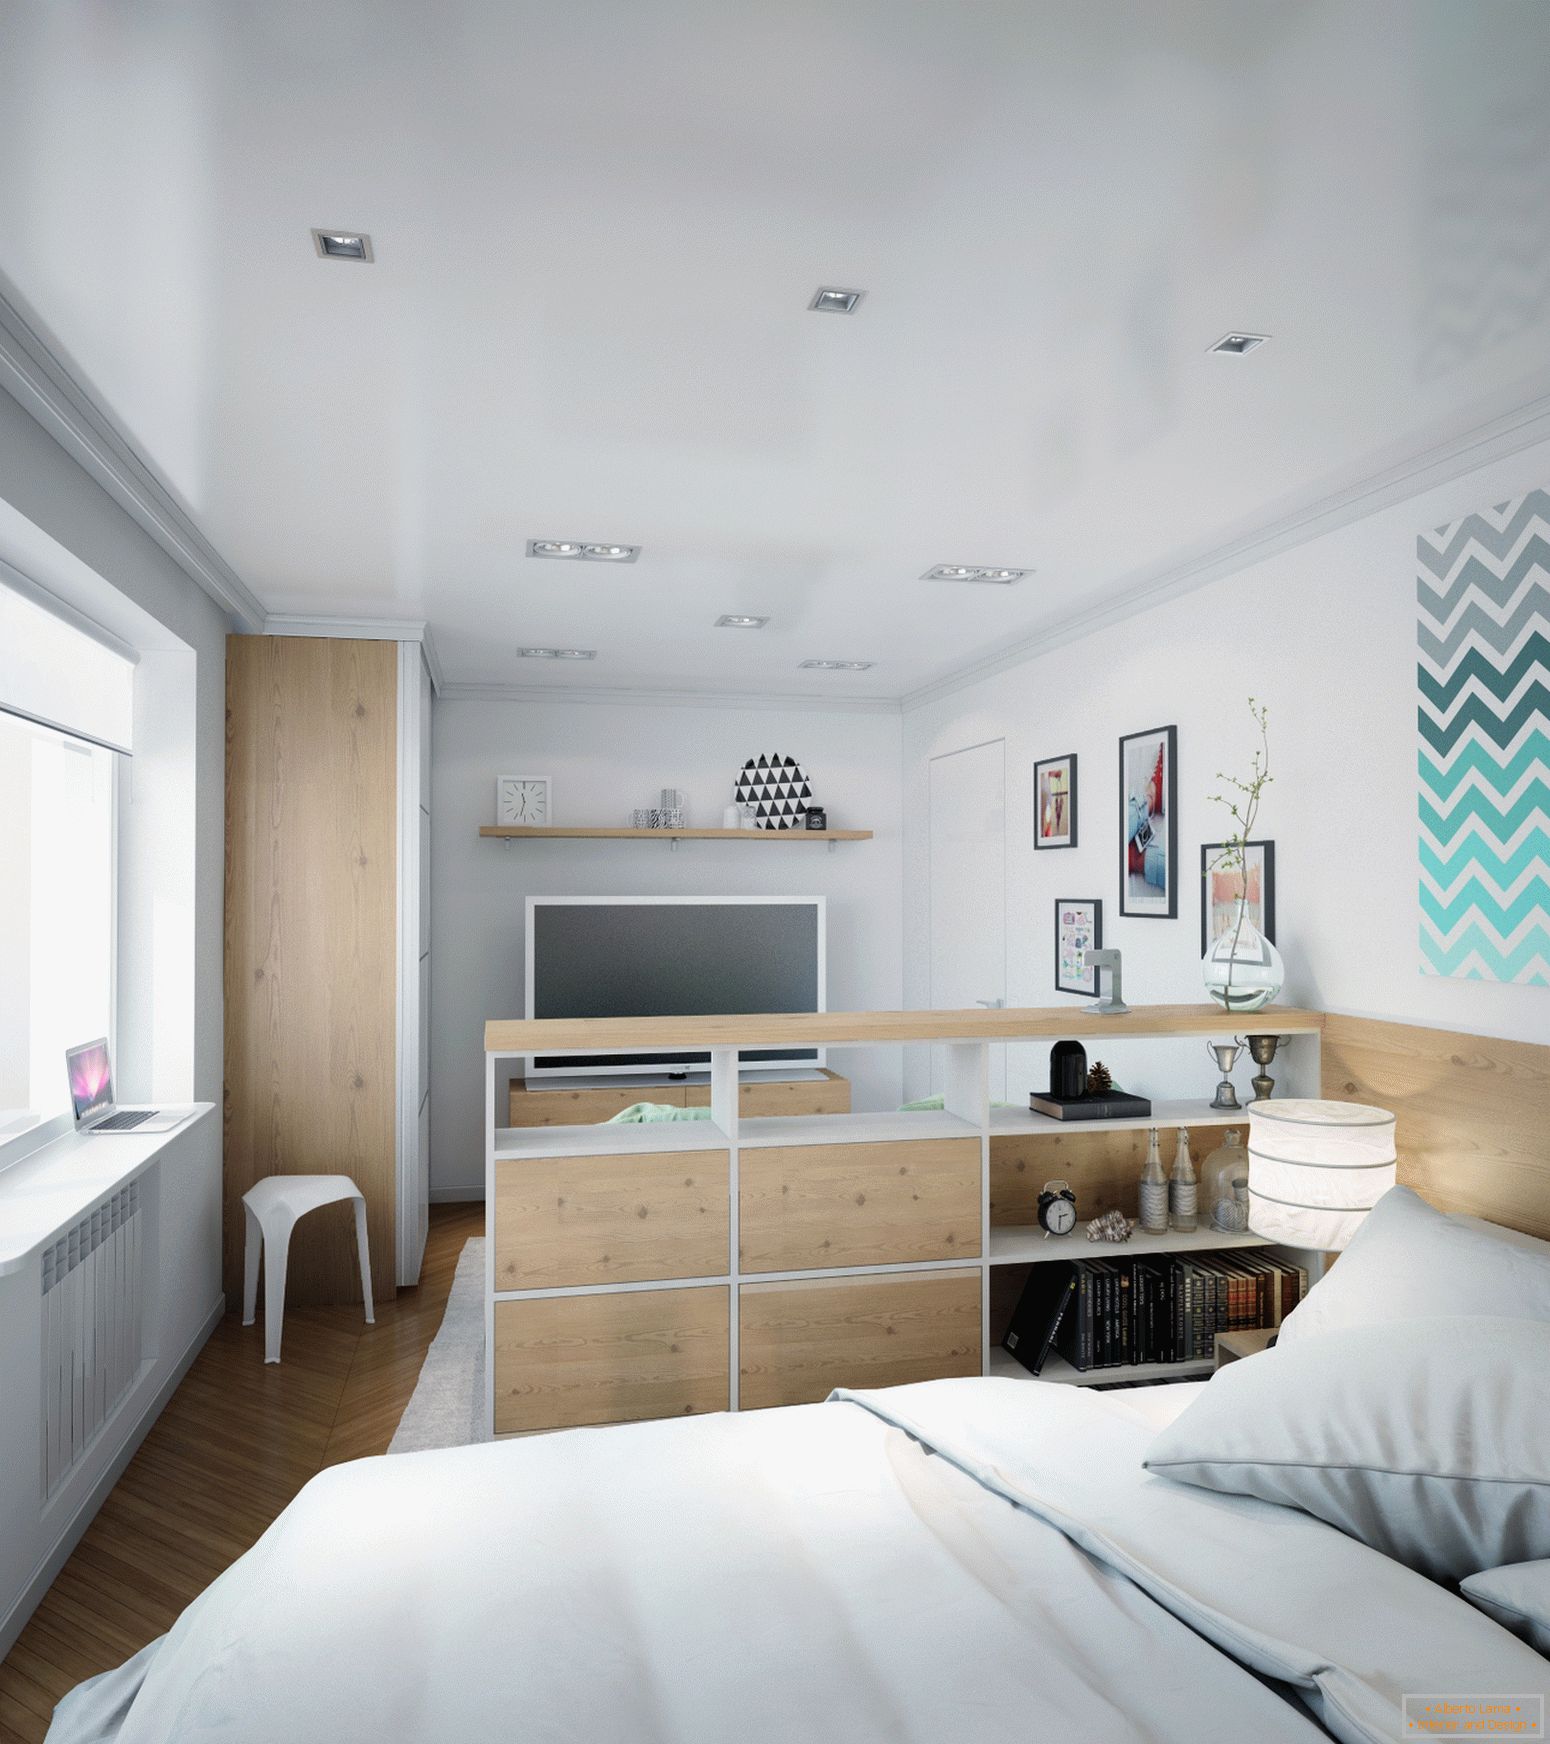 Приклад дизайну інтер'єру маленької спальні на фото